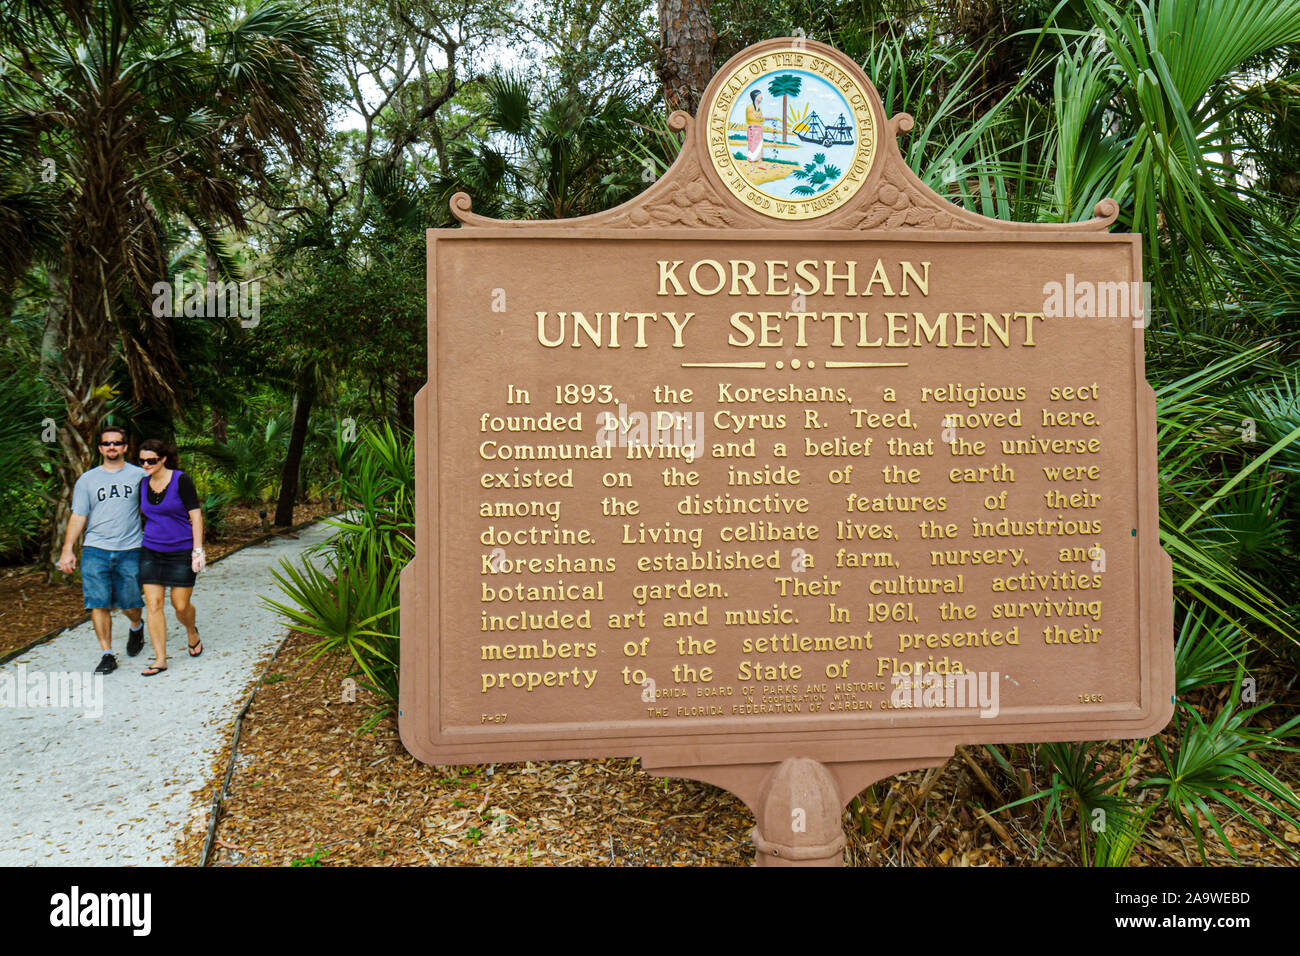 Fort Estero ft.Myers Florida, parc historique régional de Koreshan, FL100322100 Banque D'Images